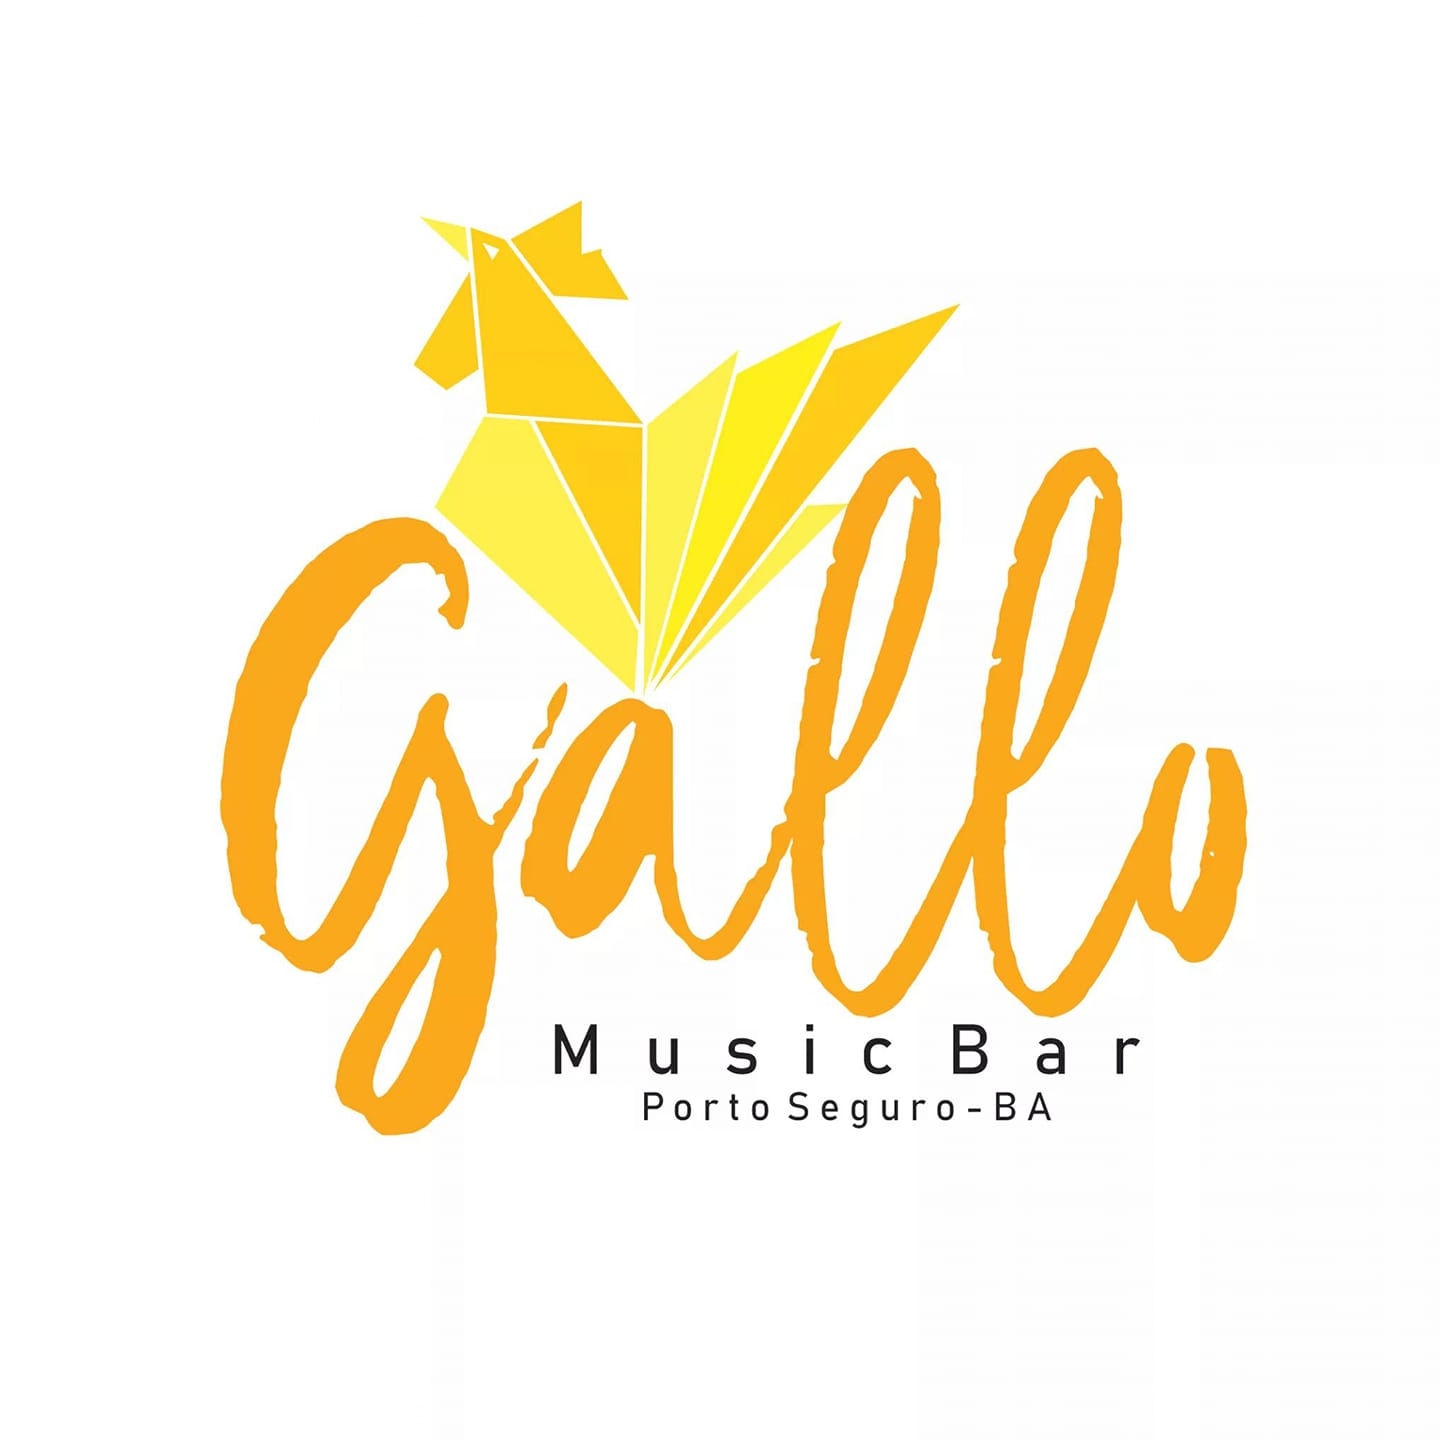 Cartaz  - Gallo Music Bar - Rua 2 de julho, 20B - Casa da Lenha, Sexta-feira 27 de Setembro de 2019